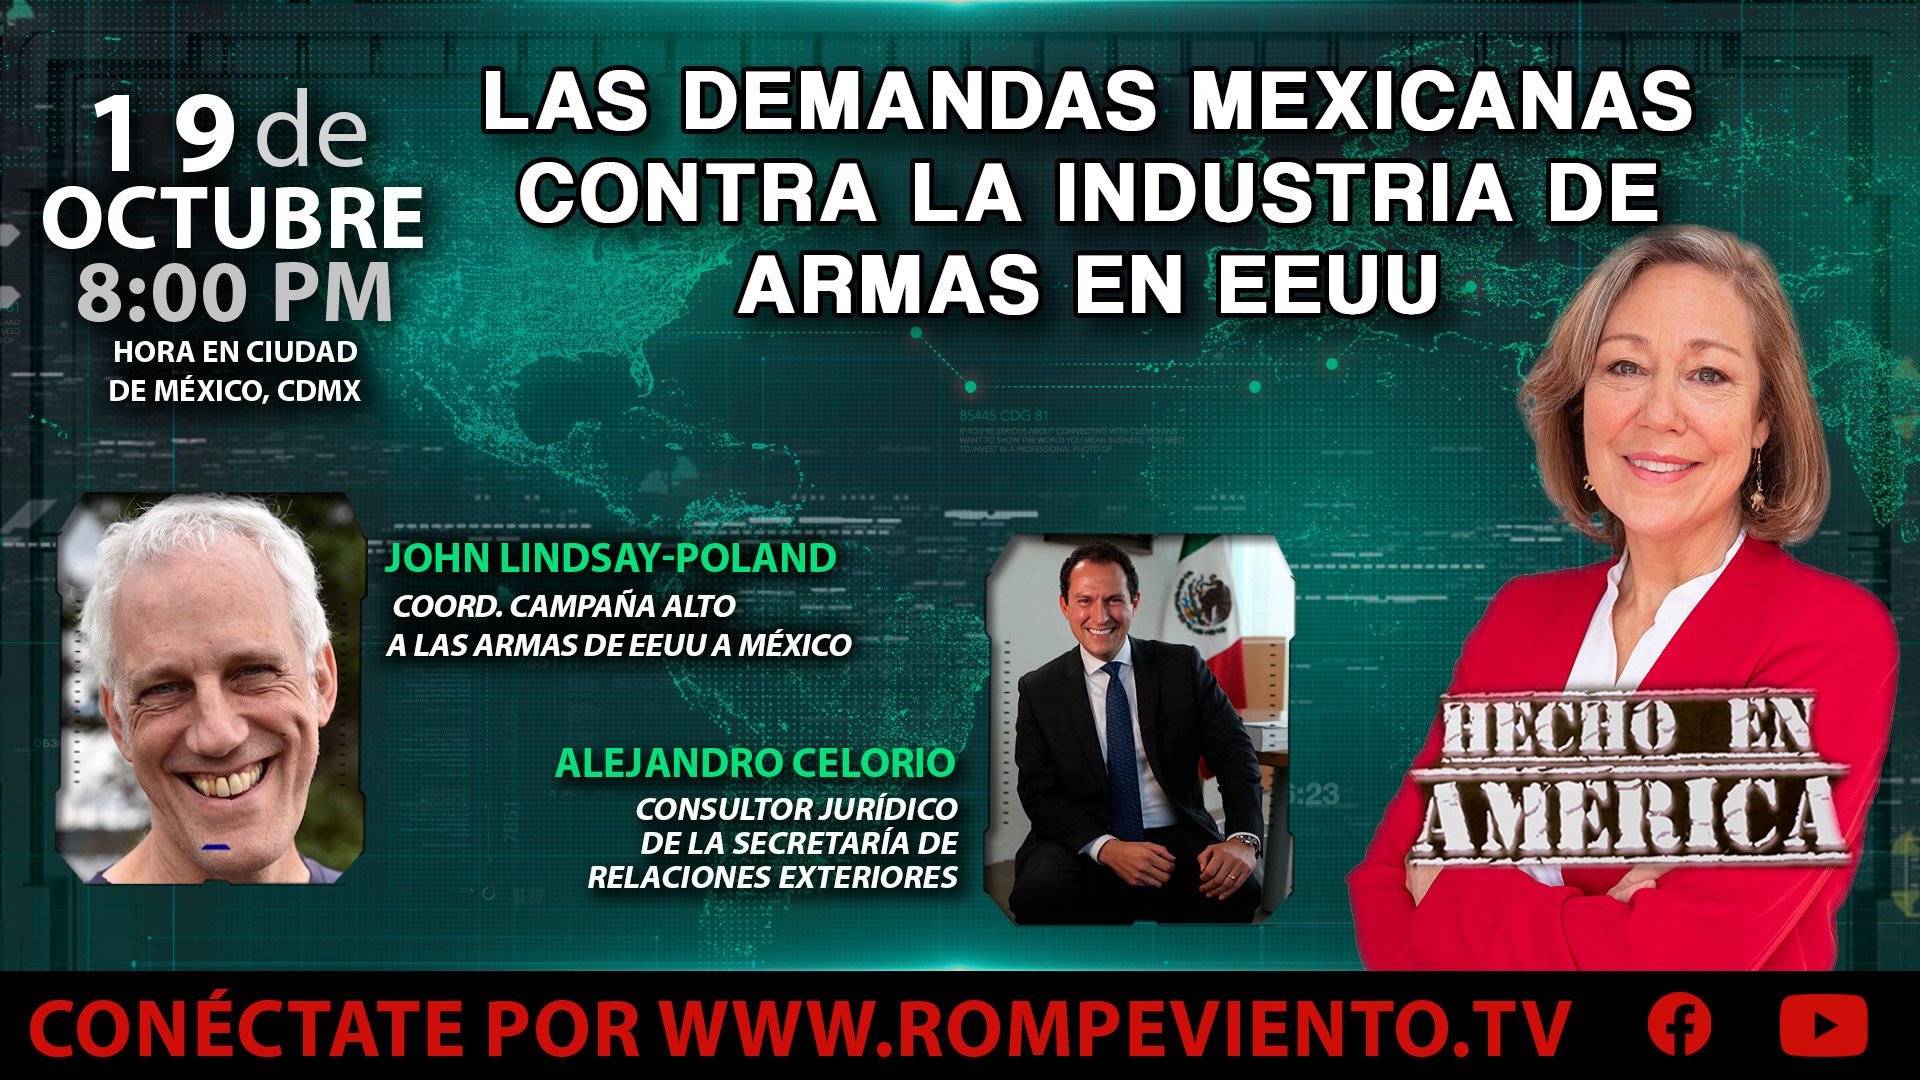 Las demandas mexicanas contra la industria de armas en EEUU - Hecho en América